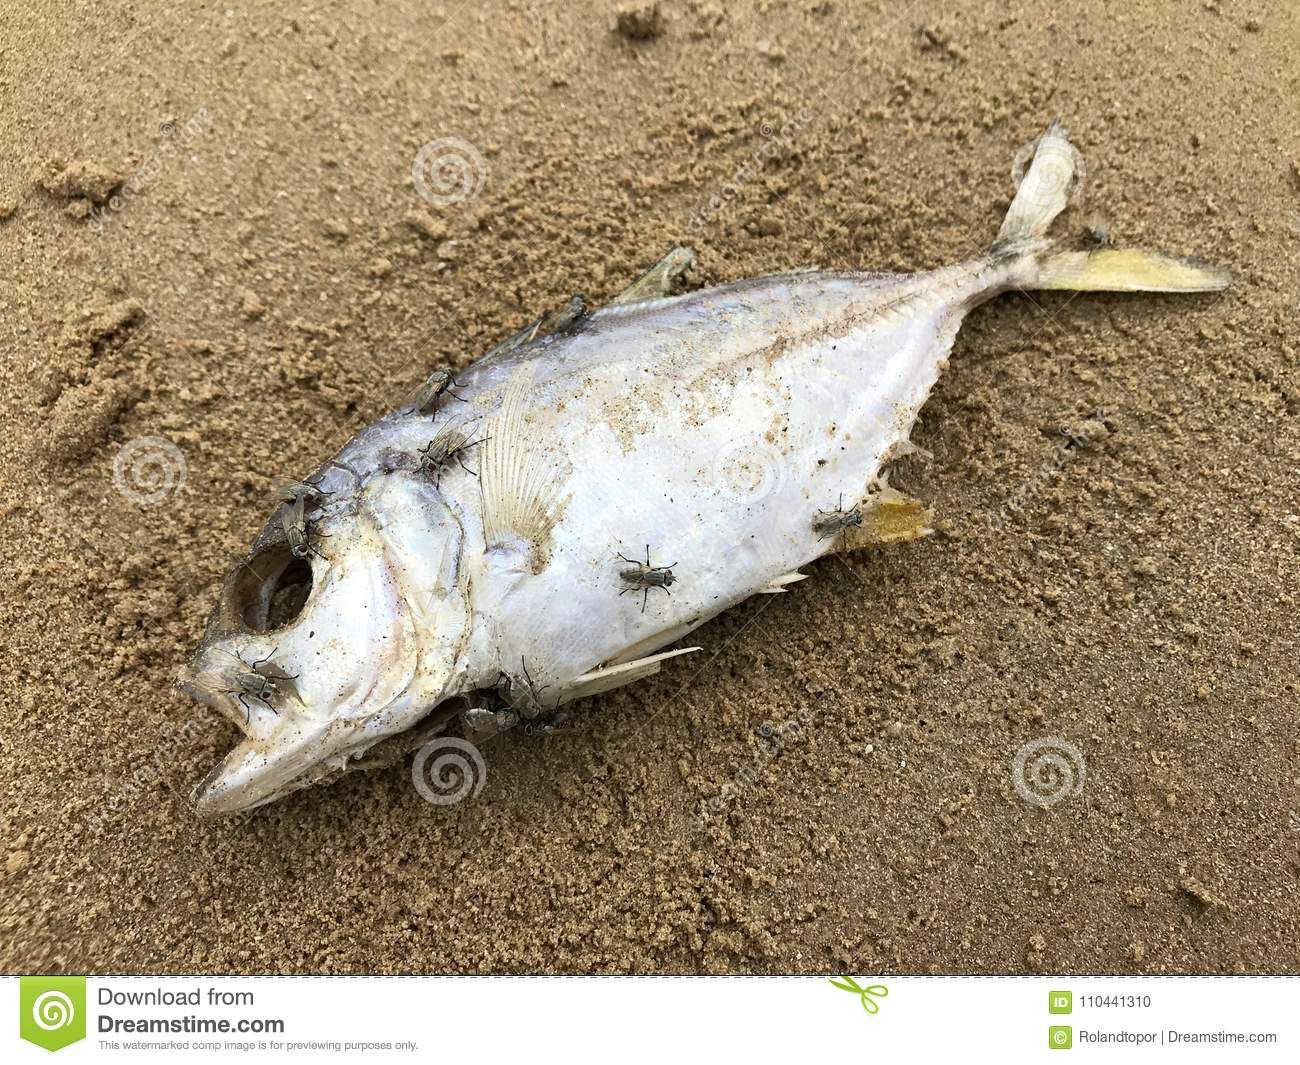 Encuentran muerto a pescaito hoy en la mañana